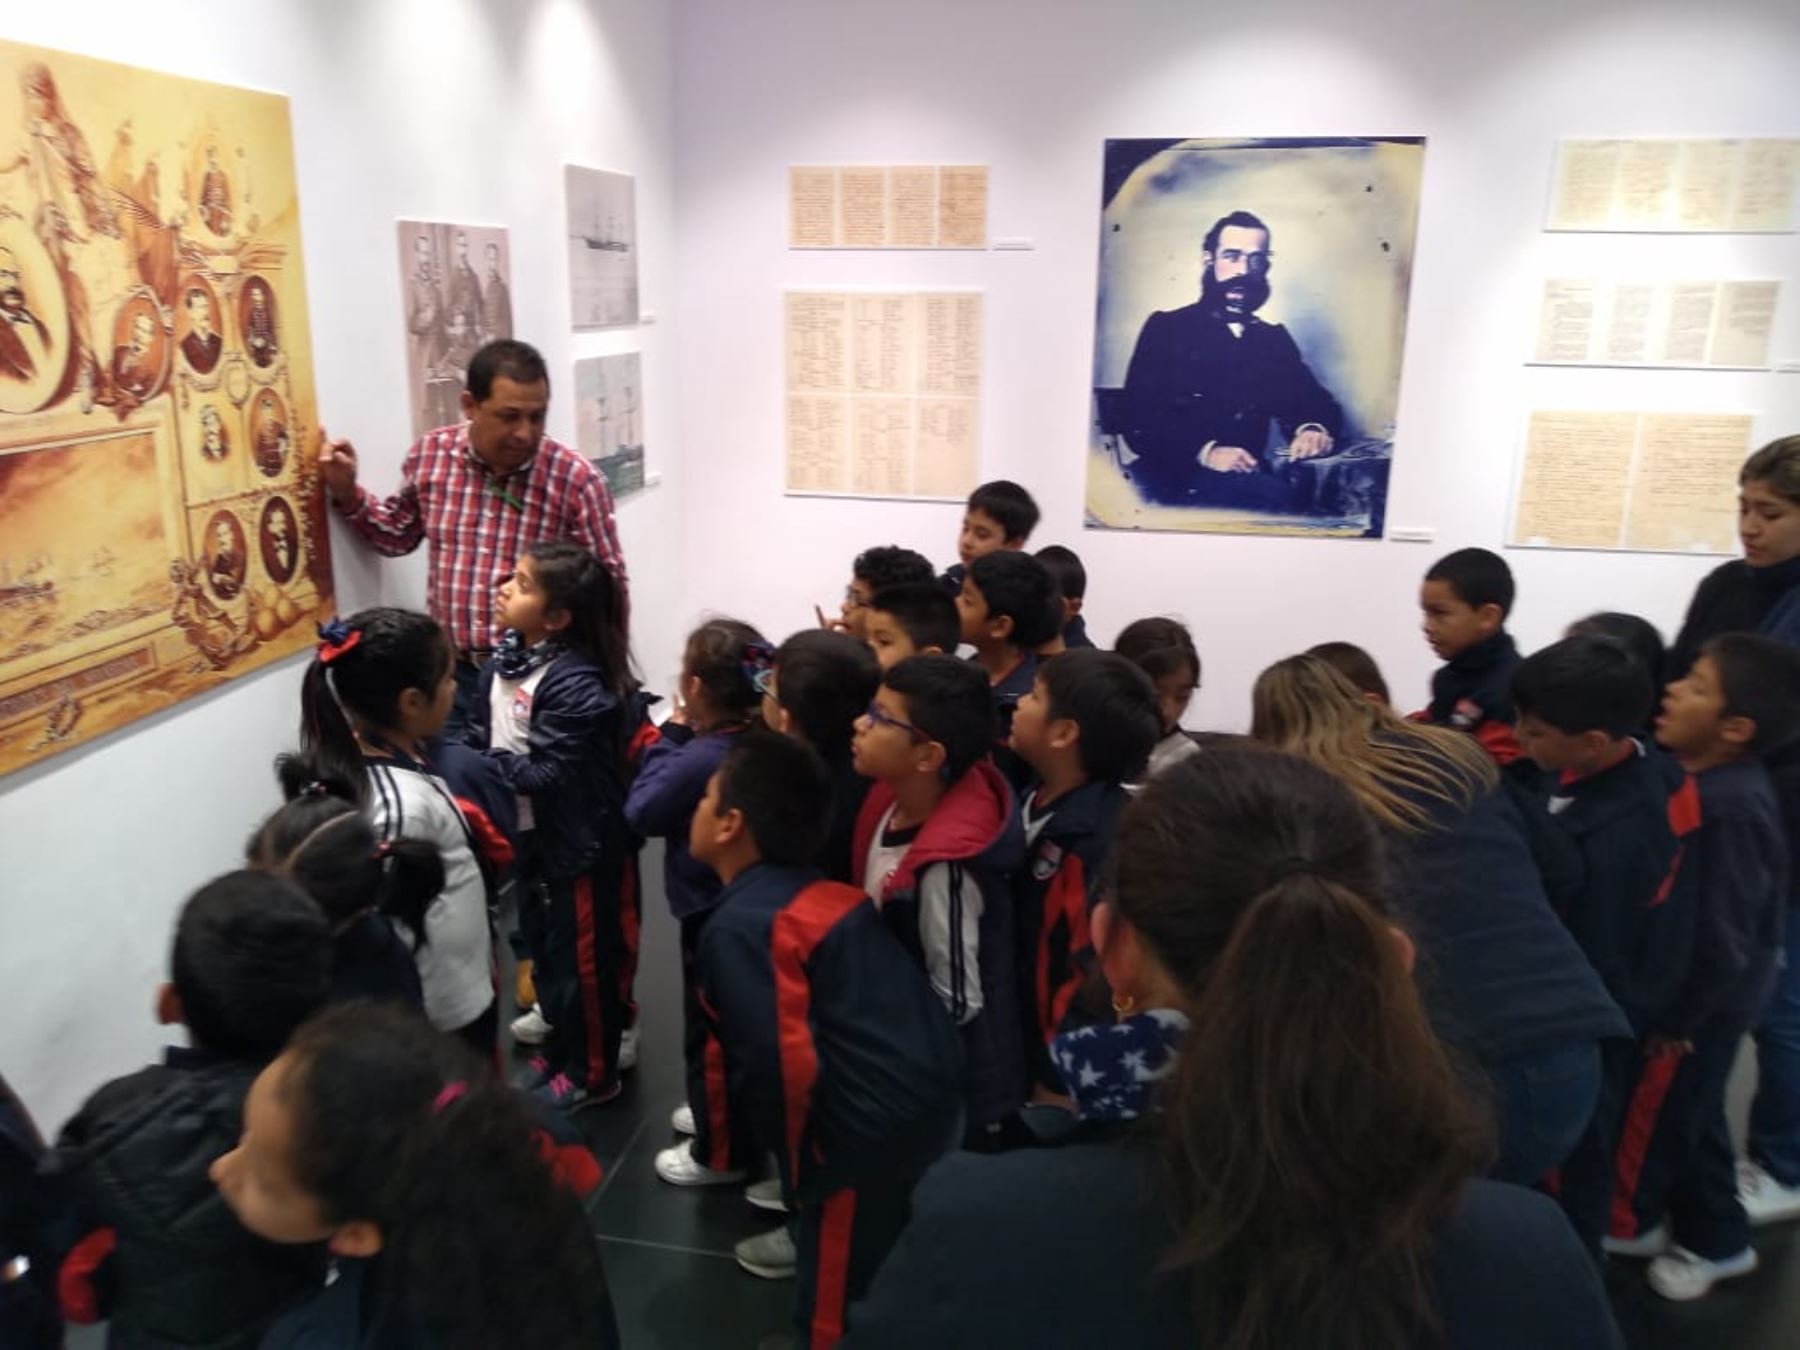 Niños de tercer grado de un centro educativo, escuchan atentos al guía en exposición sobre Grau. Foto: Municipalidad de San Isidro.